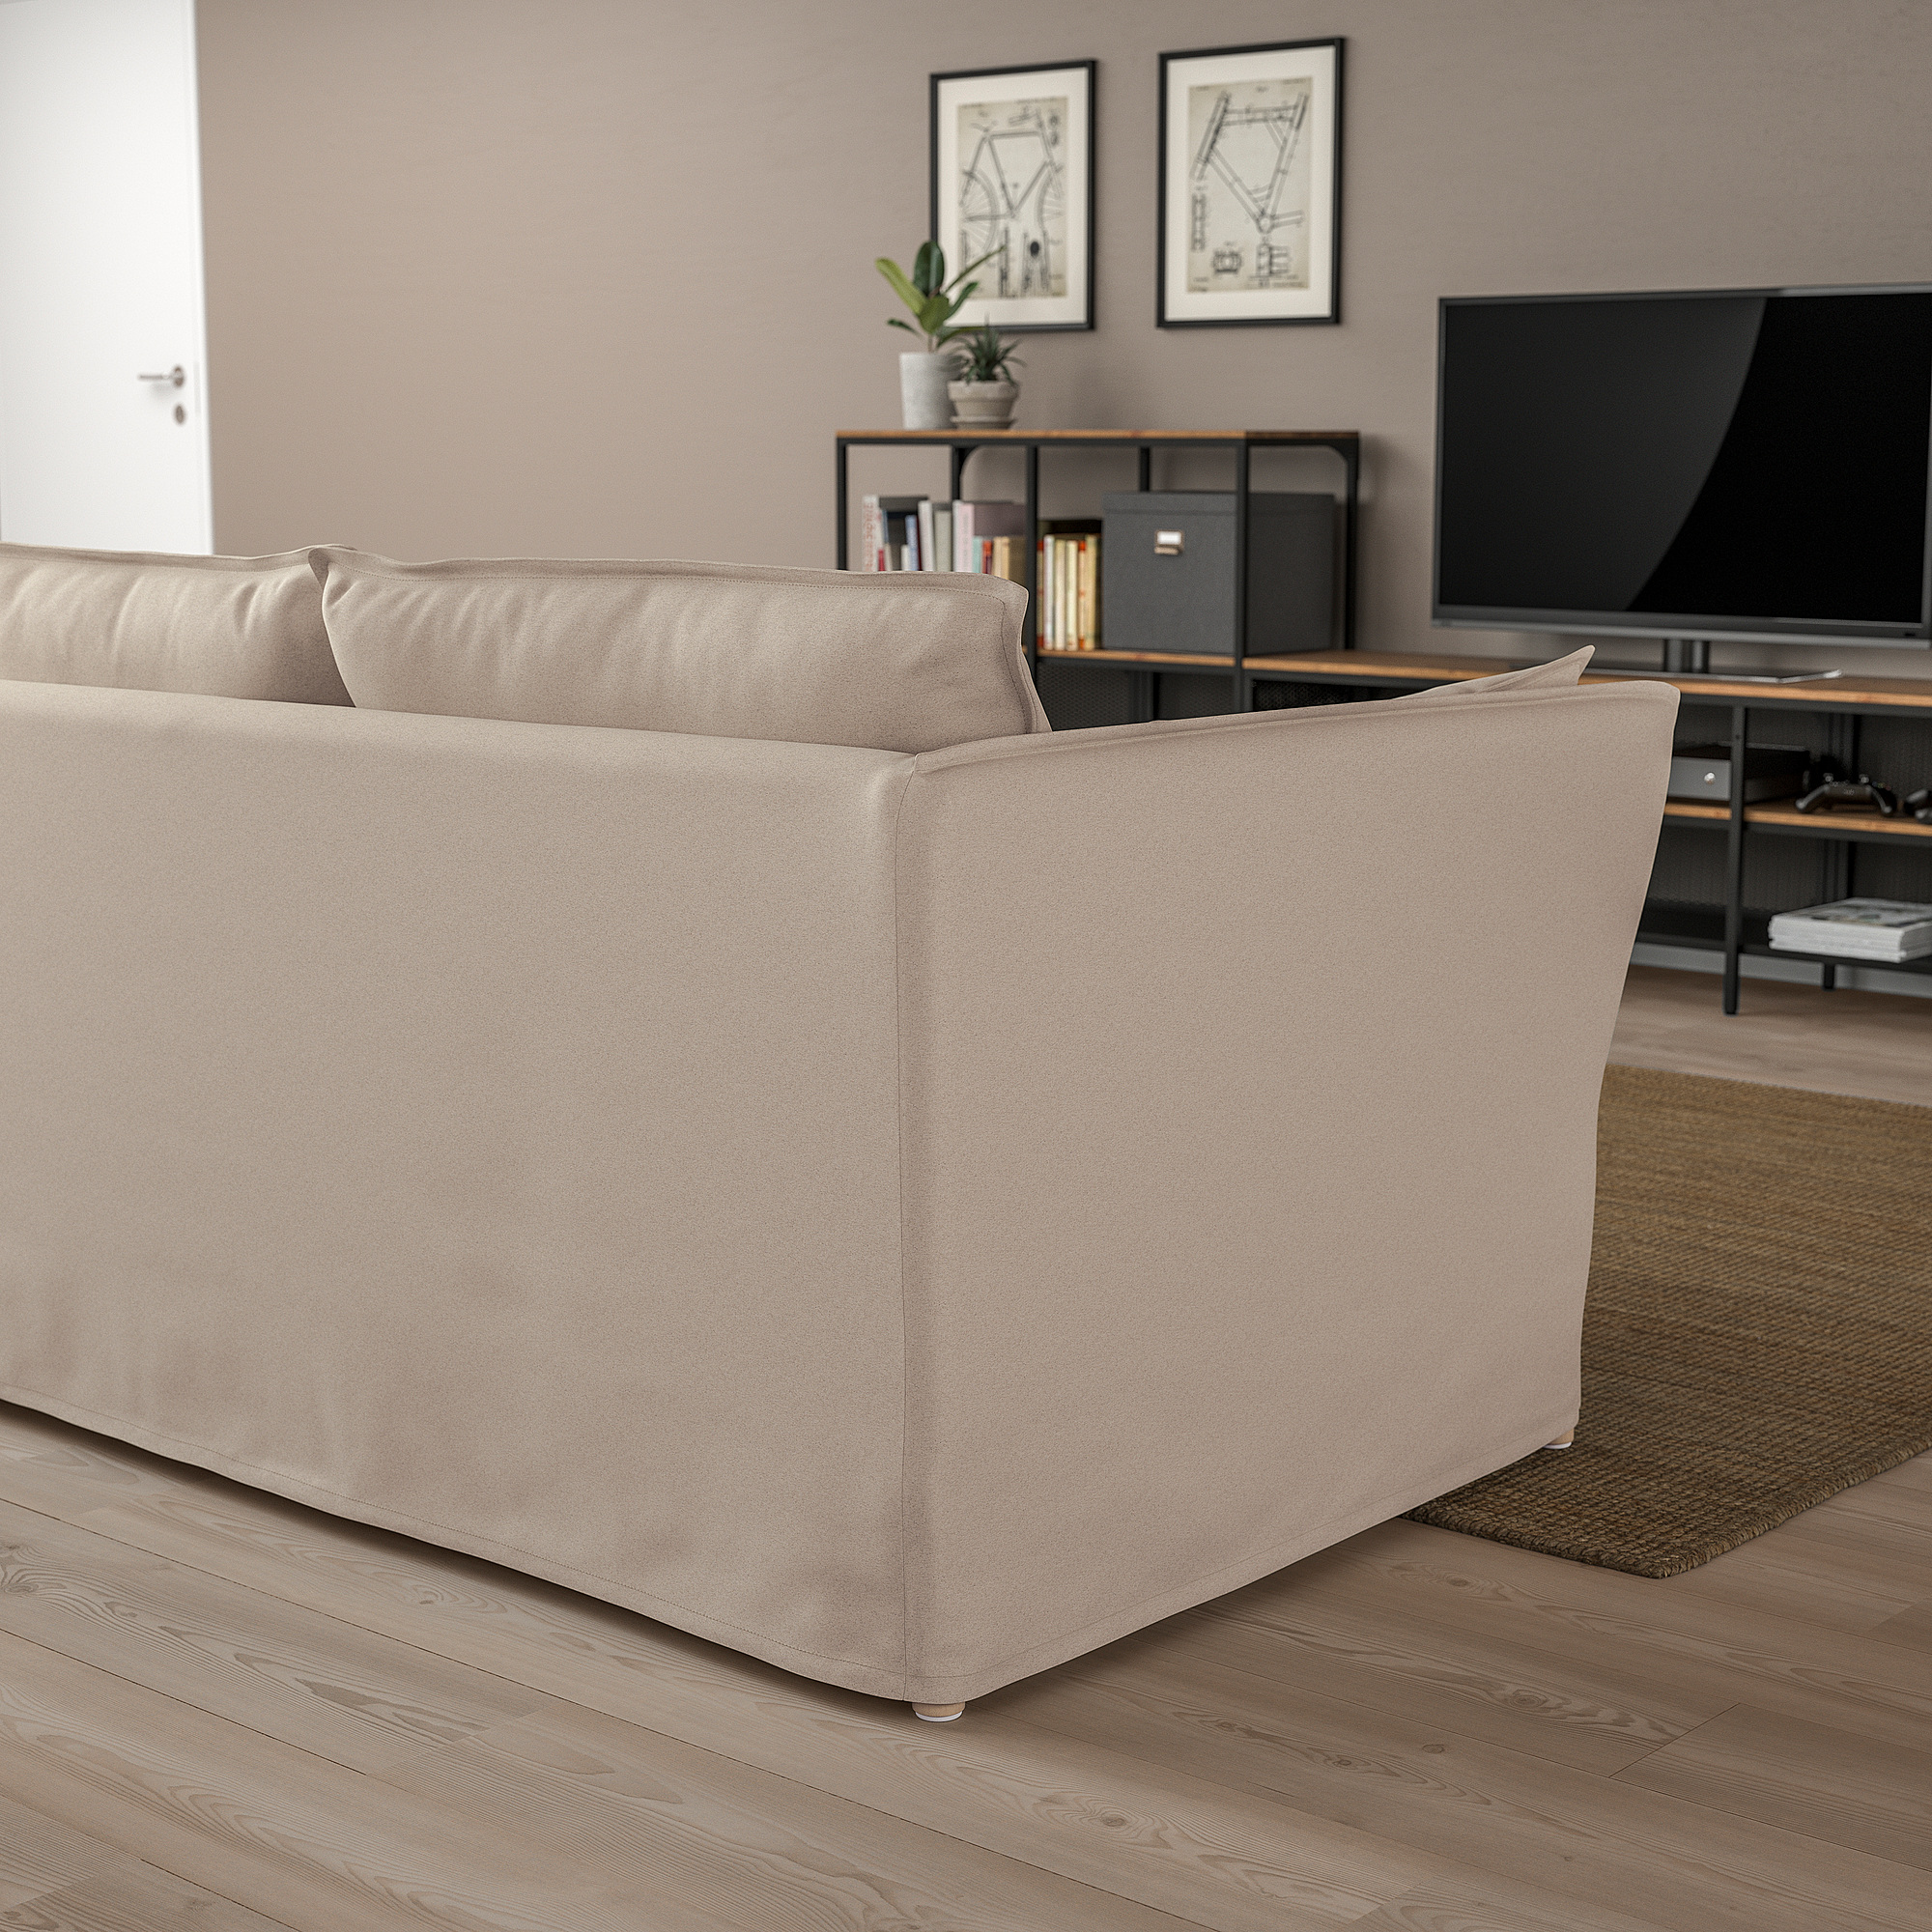 BACKSÄLEN 2-seat sofa